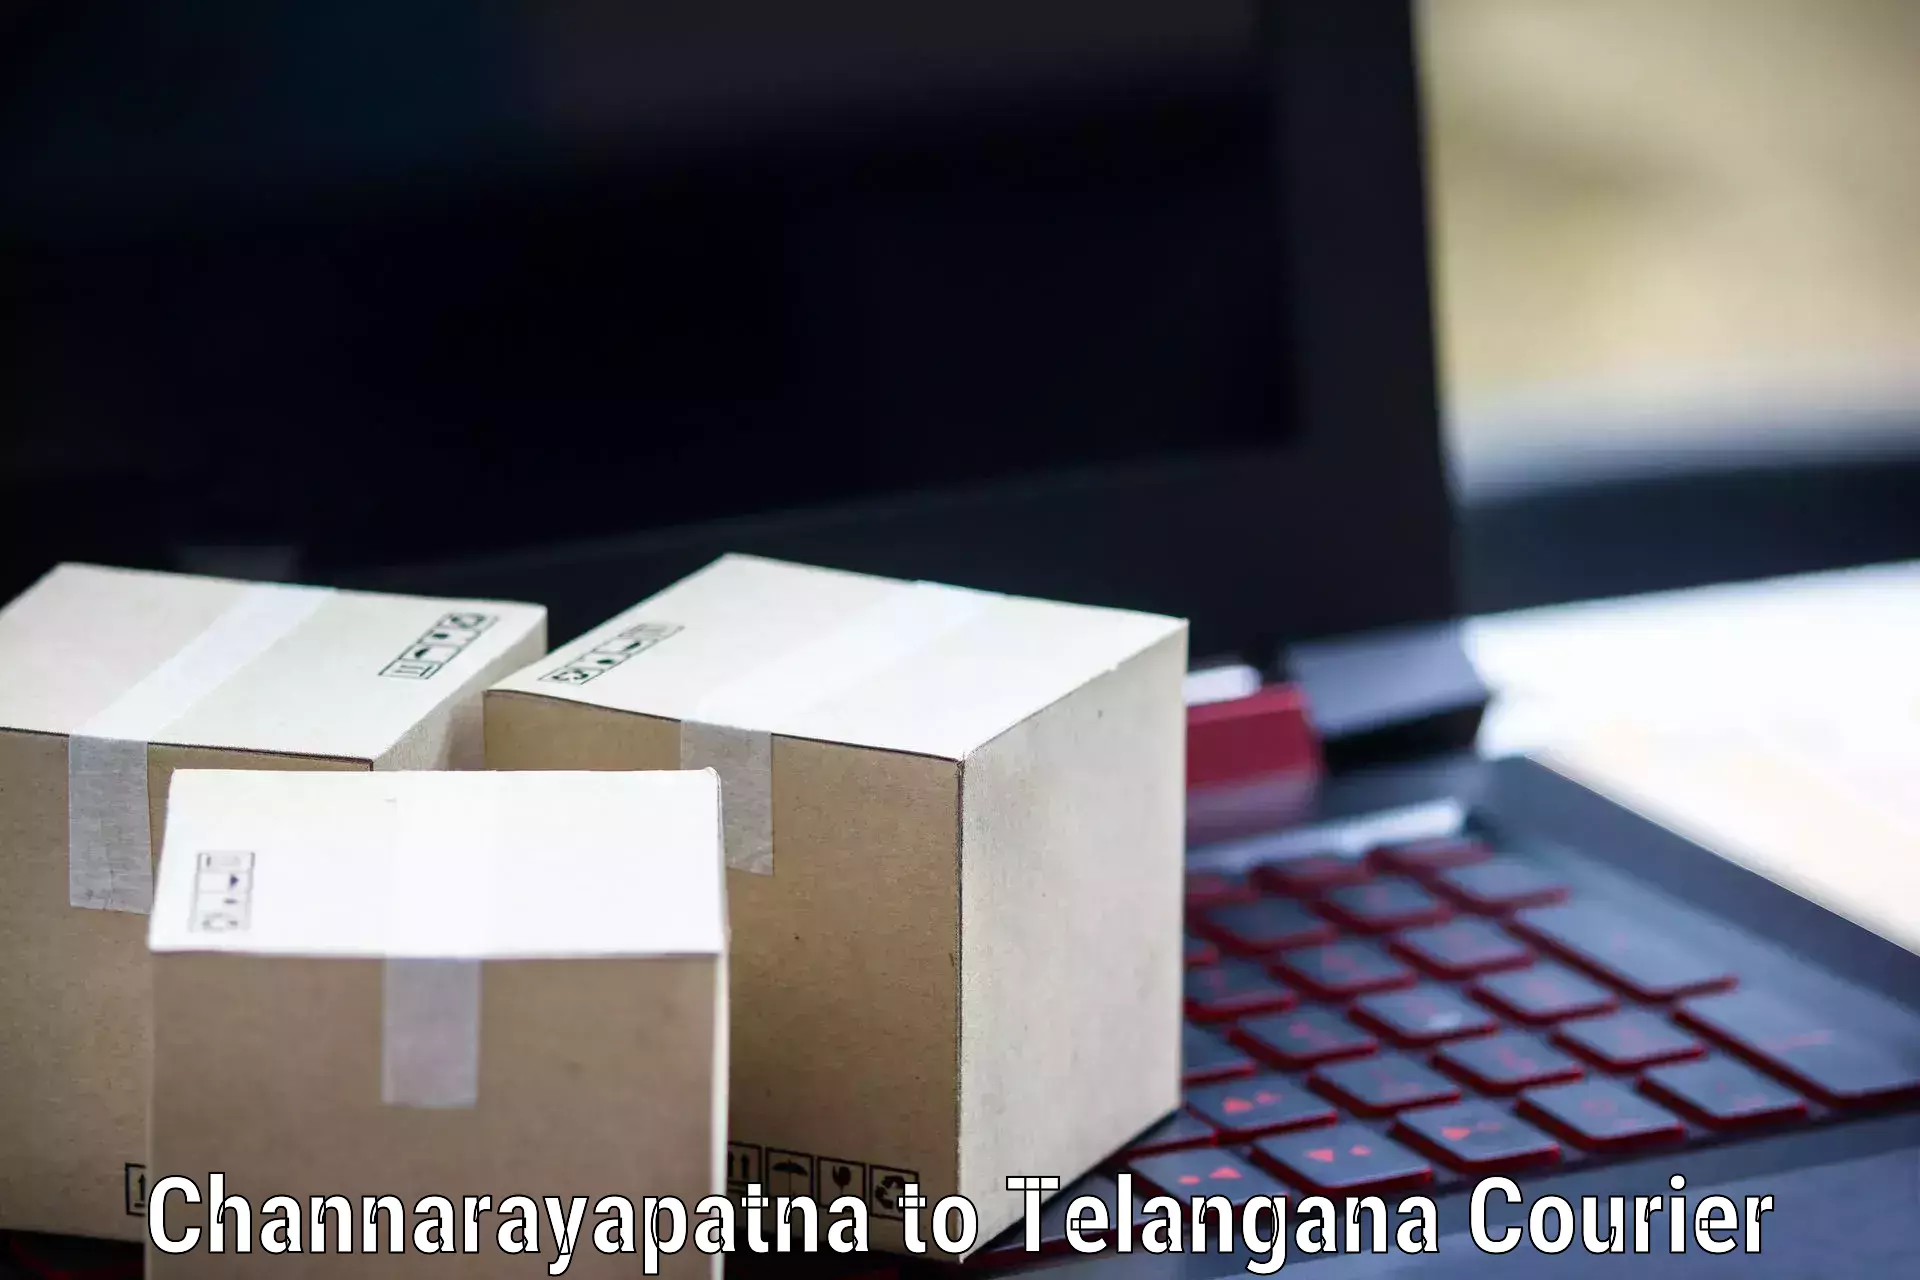 Nationwide parcel services Channarayapatna to Banswada